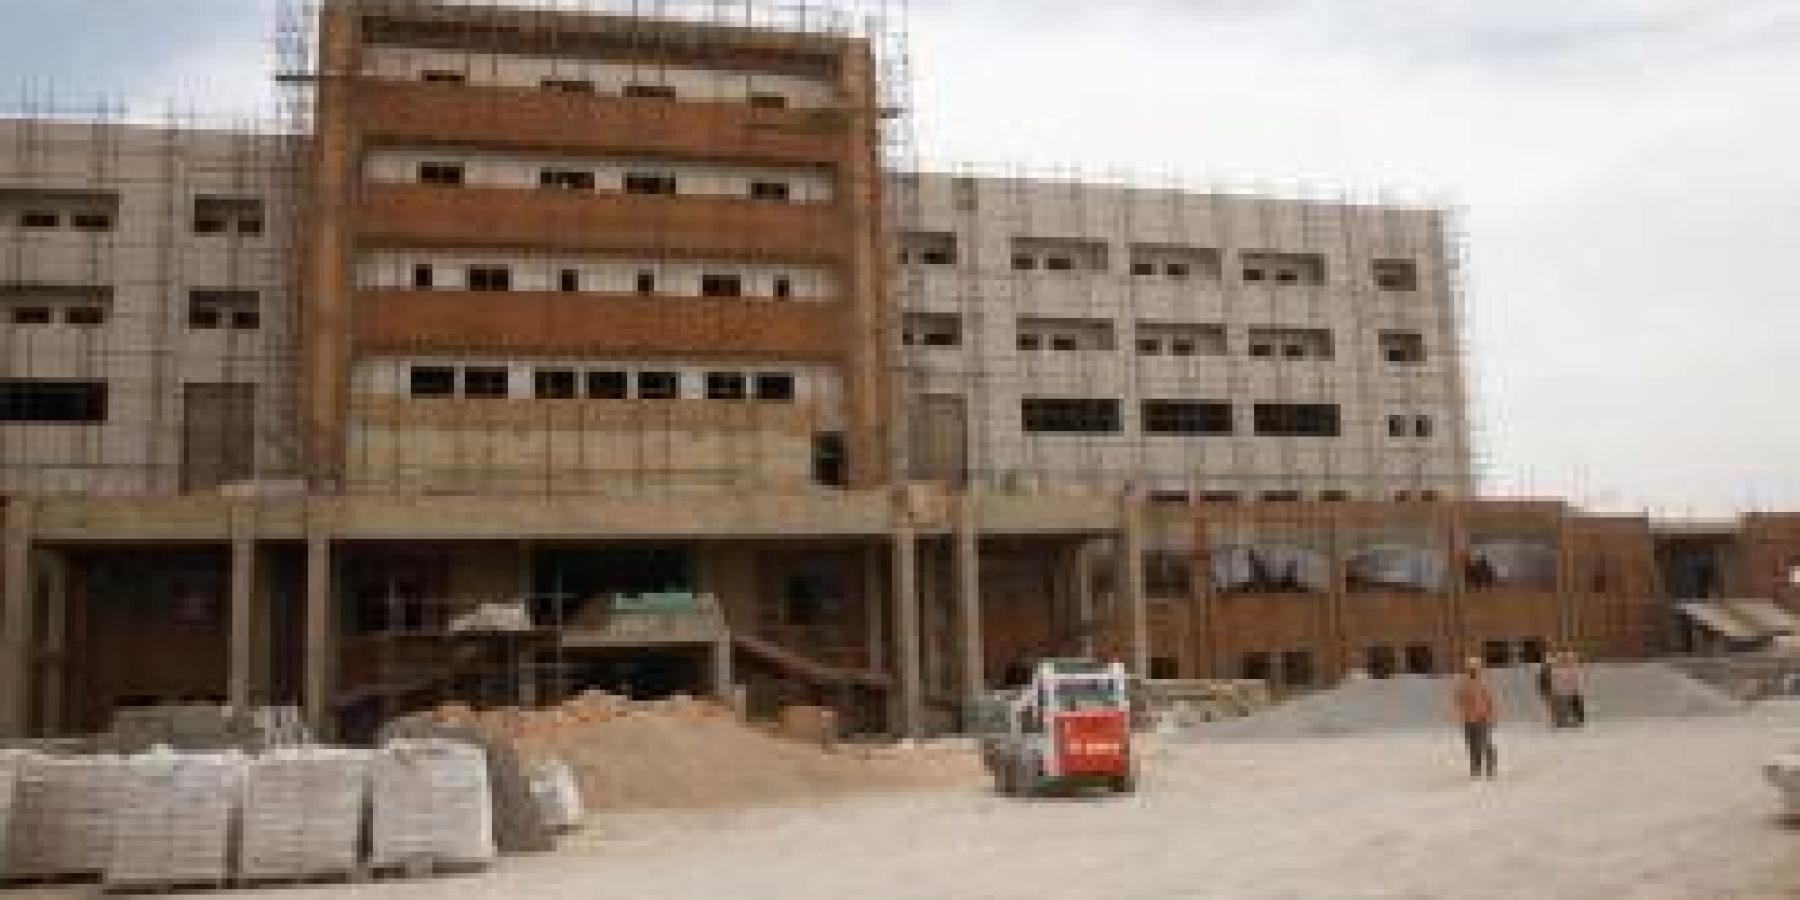 مستشفى الإمام علي(عليه السلام) مشروع انساني كبير لخدمة الزائرين الكرام